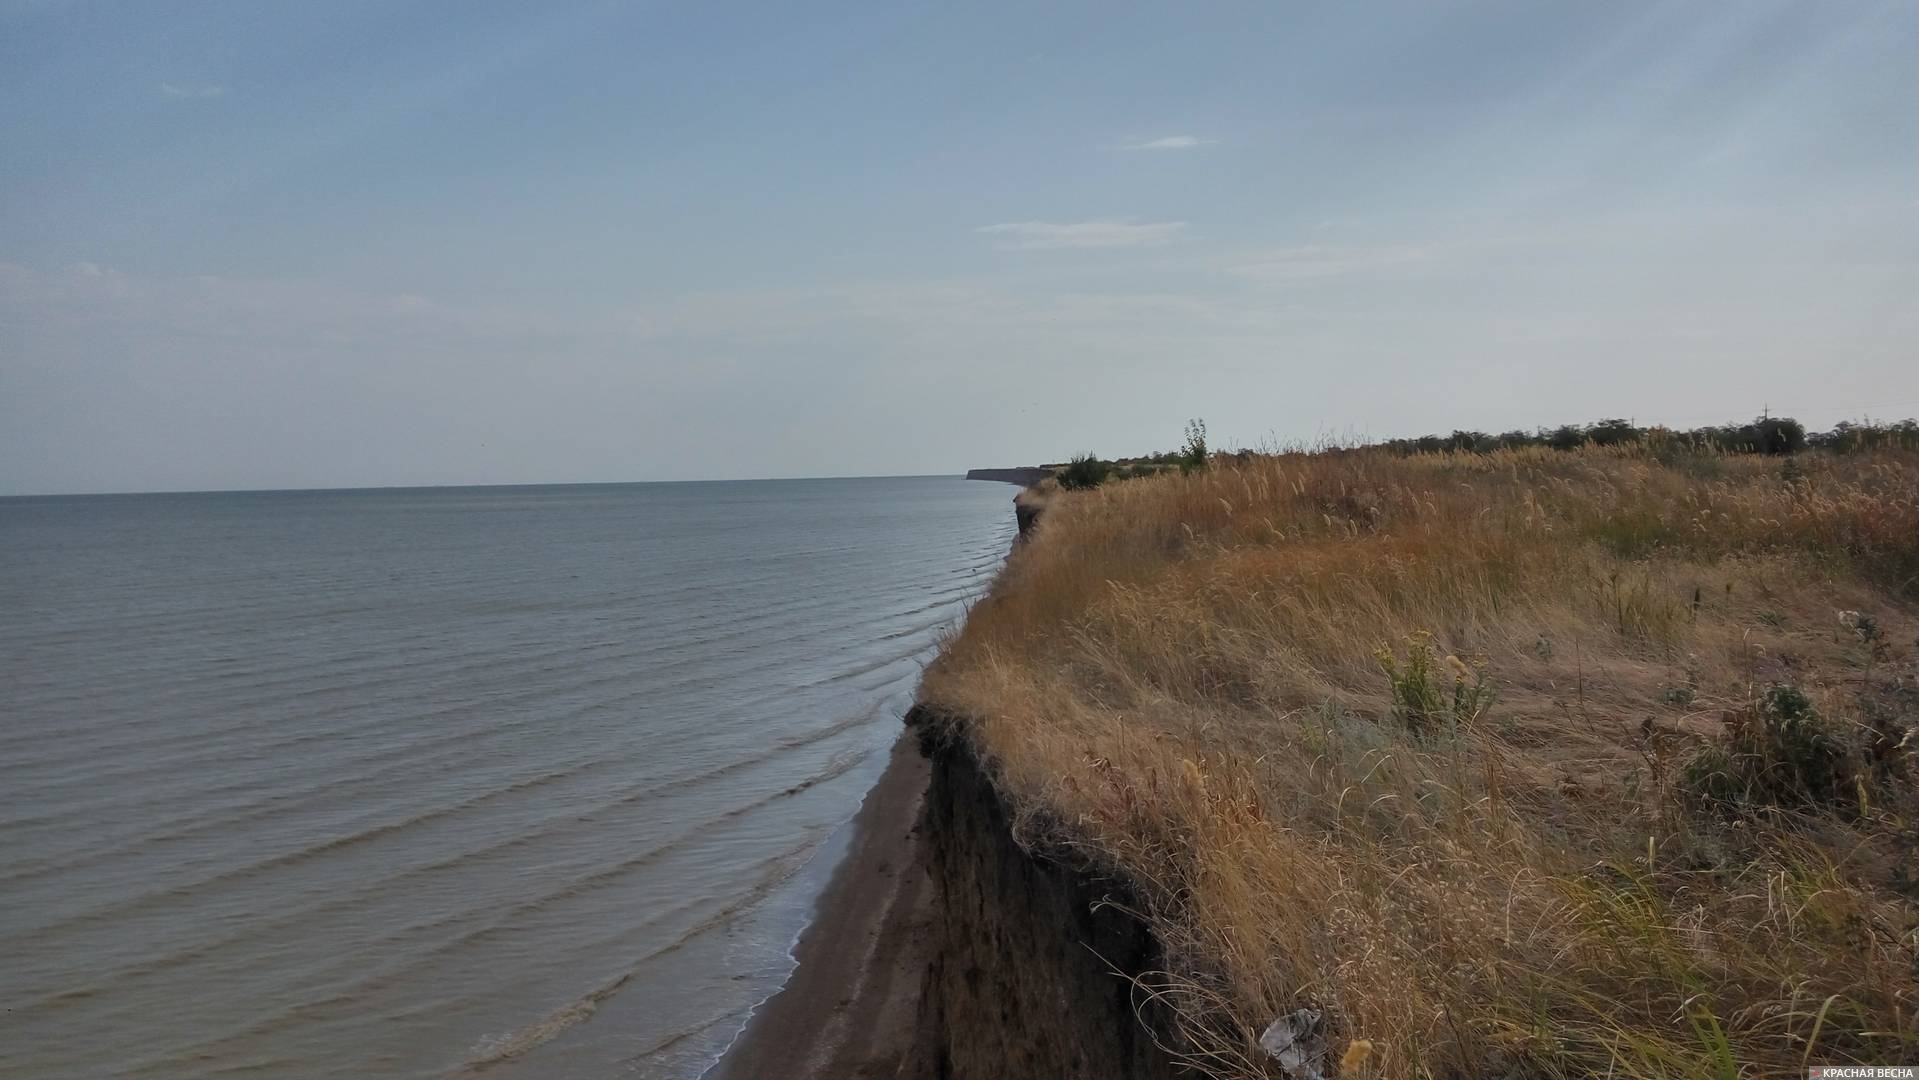 Таганрогский залив